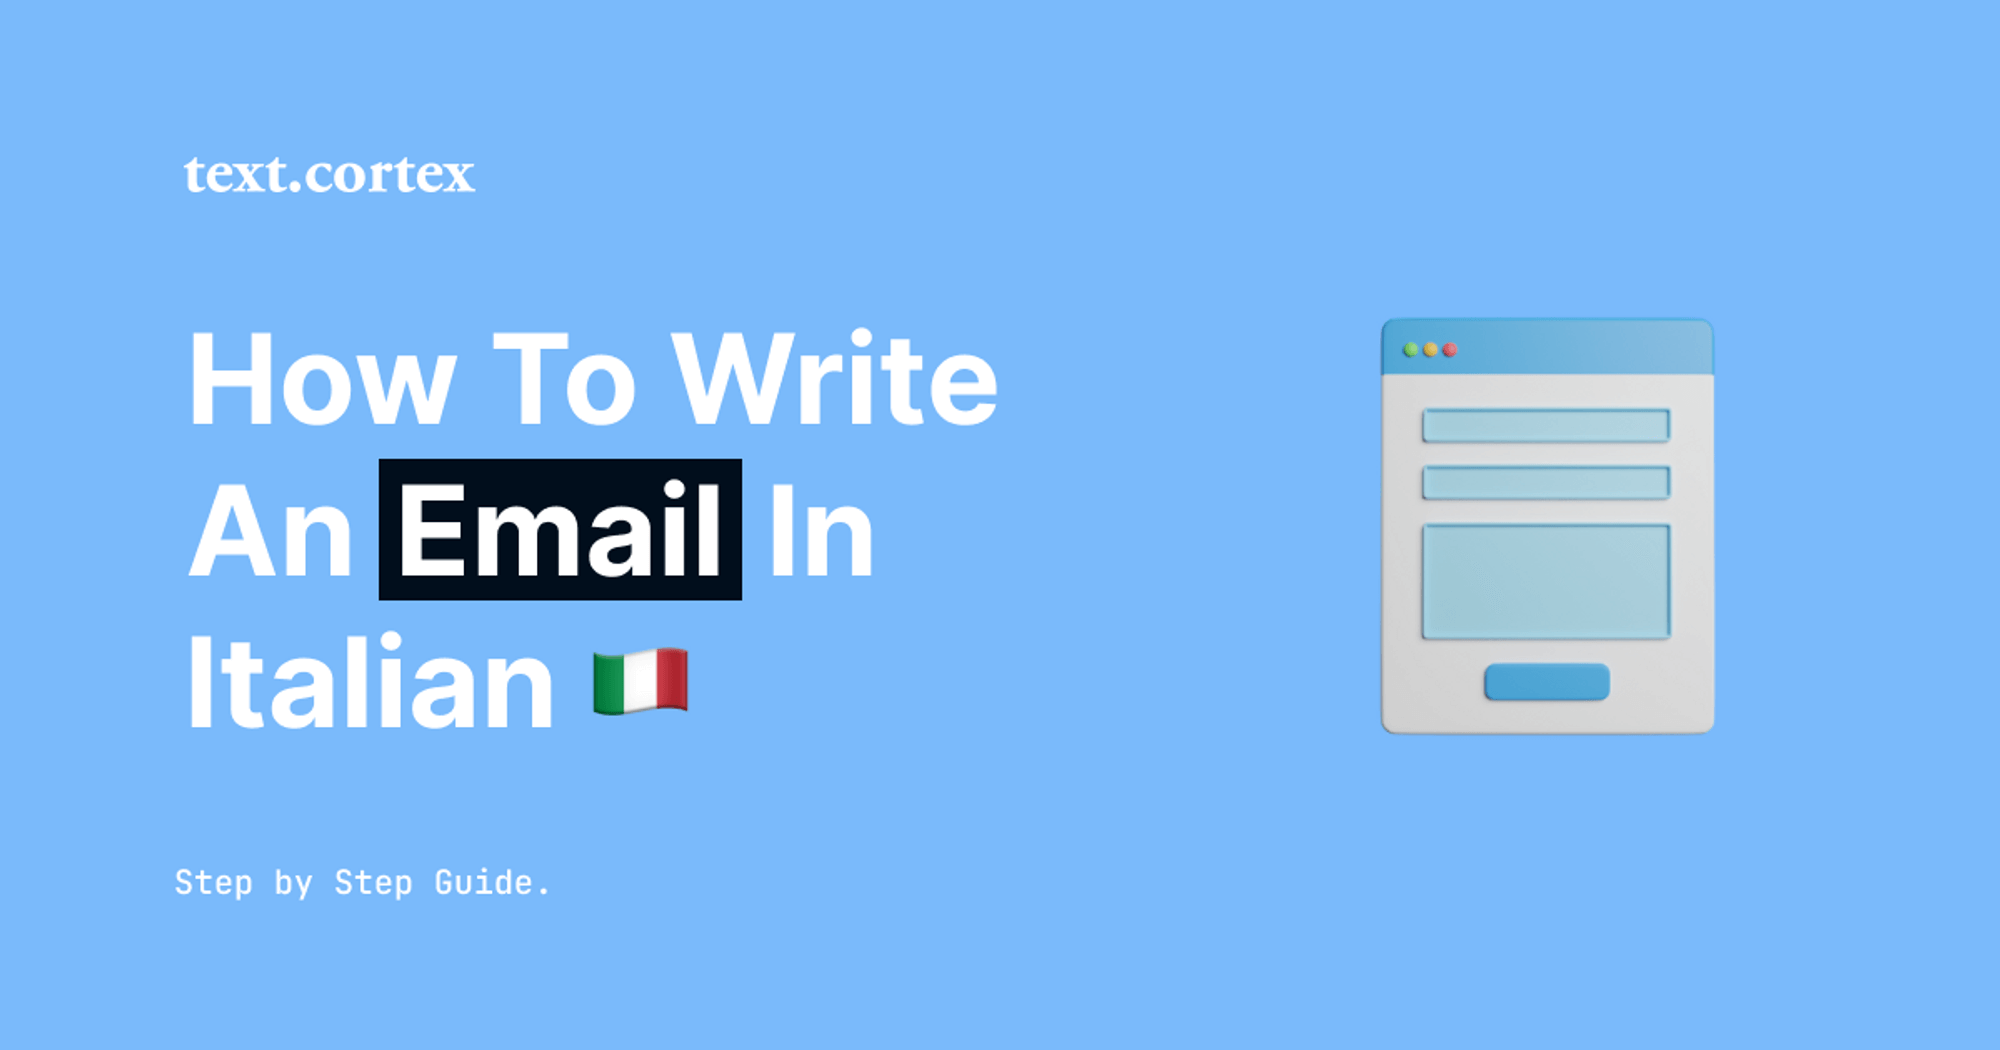 이탈리아어로 이메일을 작성하는 방법 - 단계별 가이드